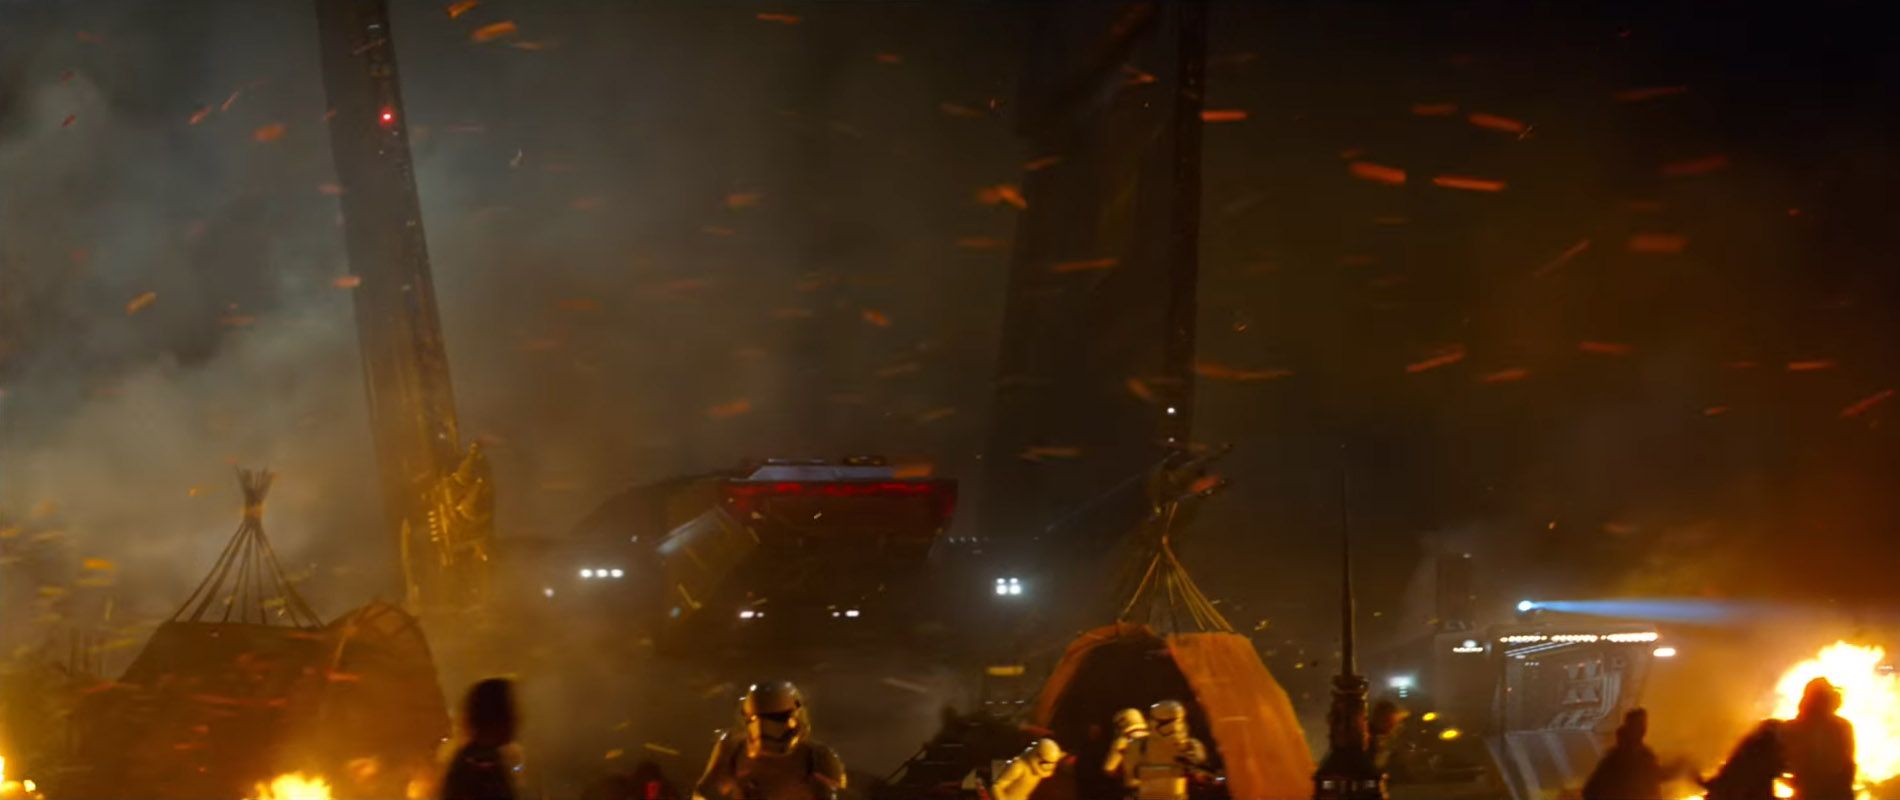 Star Wars 7 Trailer #3 - Kylo Ren's Shuttle